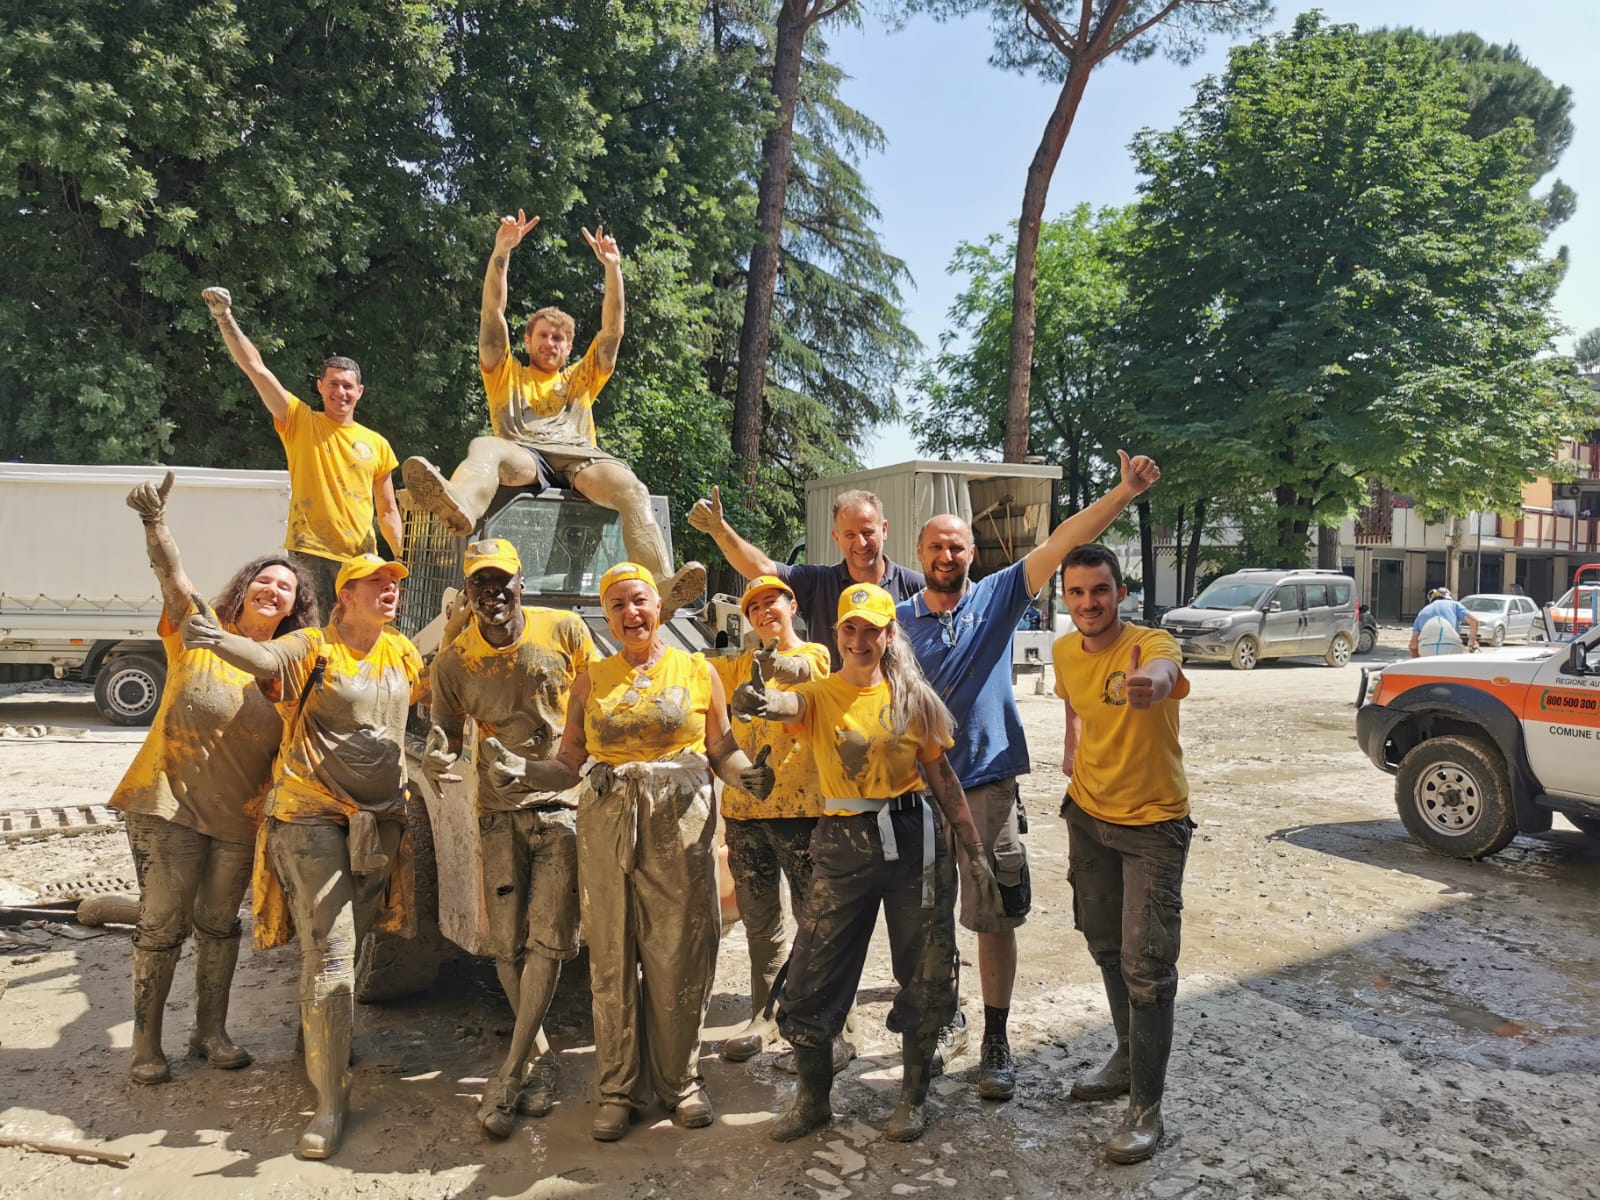 Padova: Pomoc a pozdravy od scientologických dobrovolníků celému městu Forlì